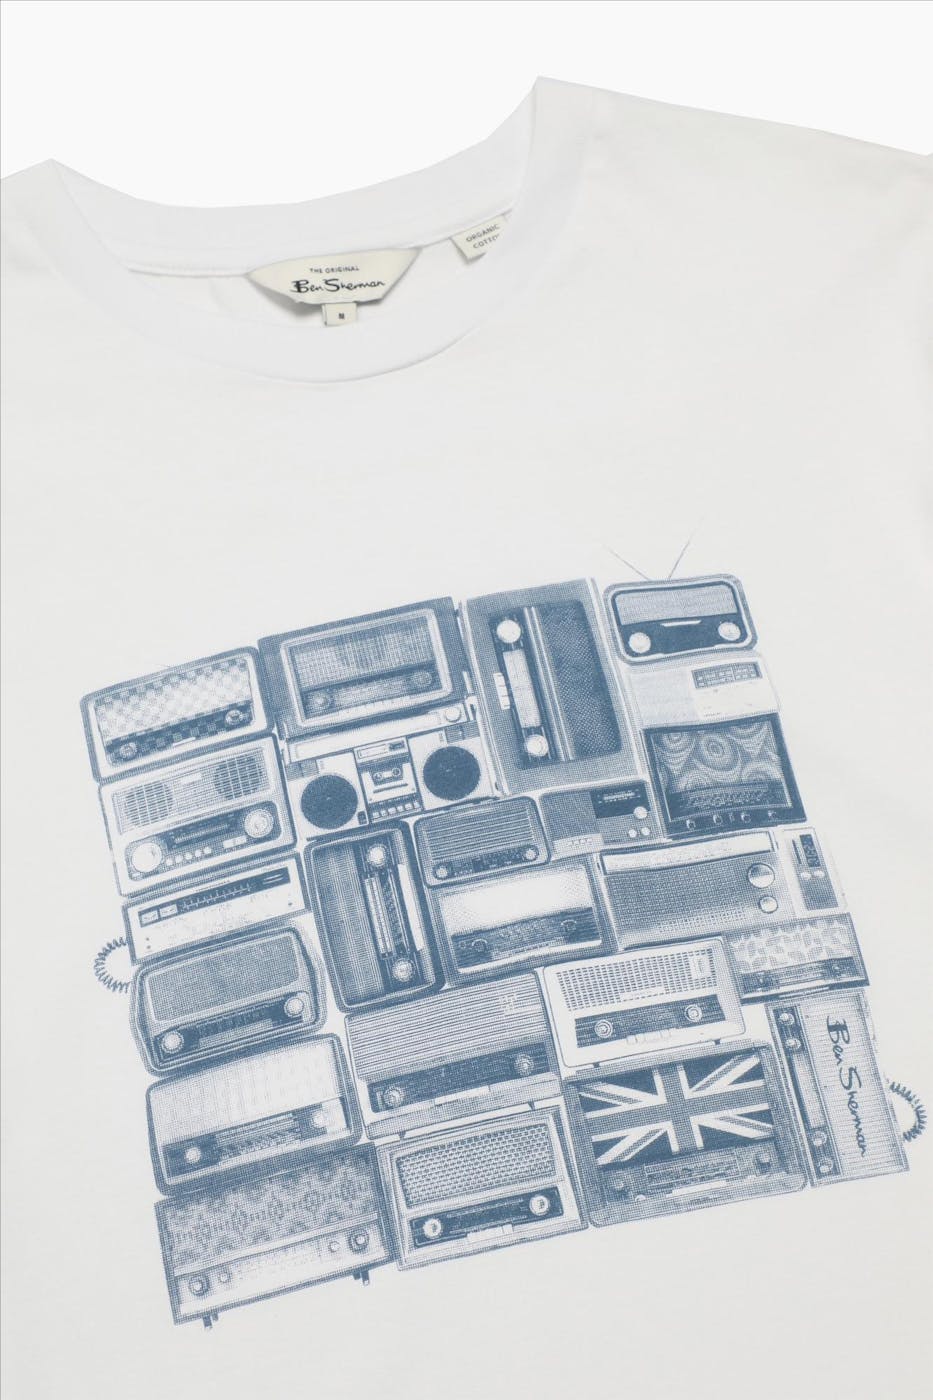 Ben Sherman - Witte Radio Stack T-shirt